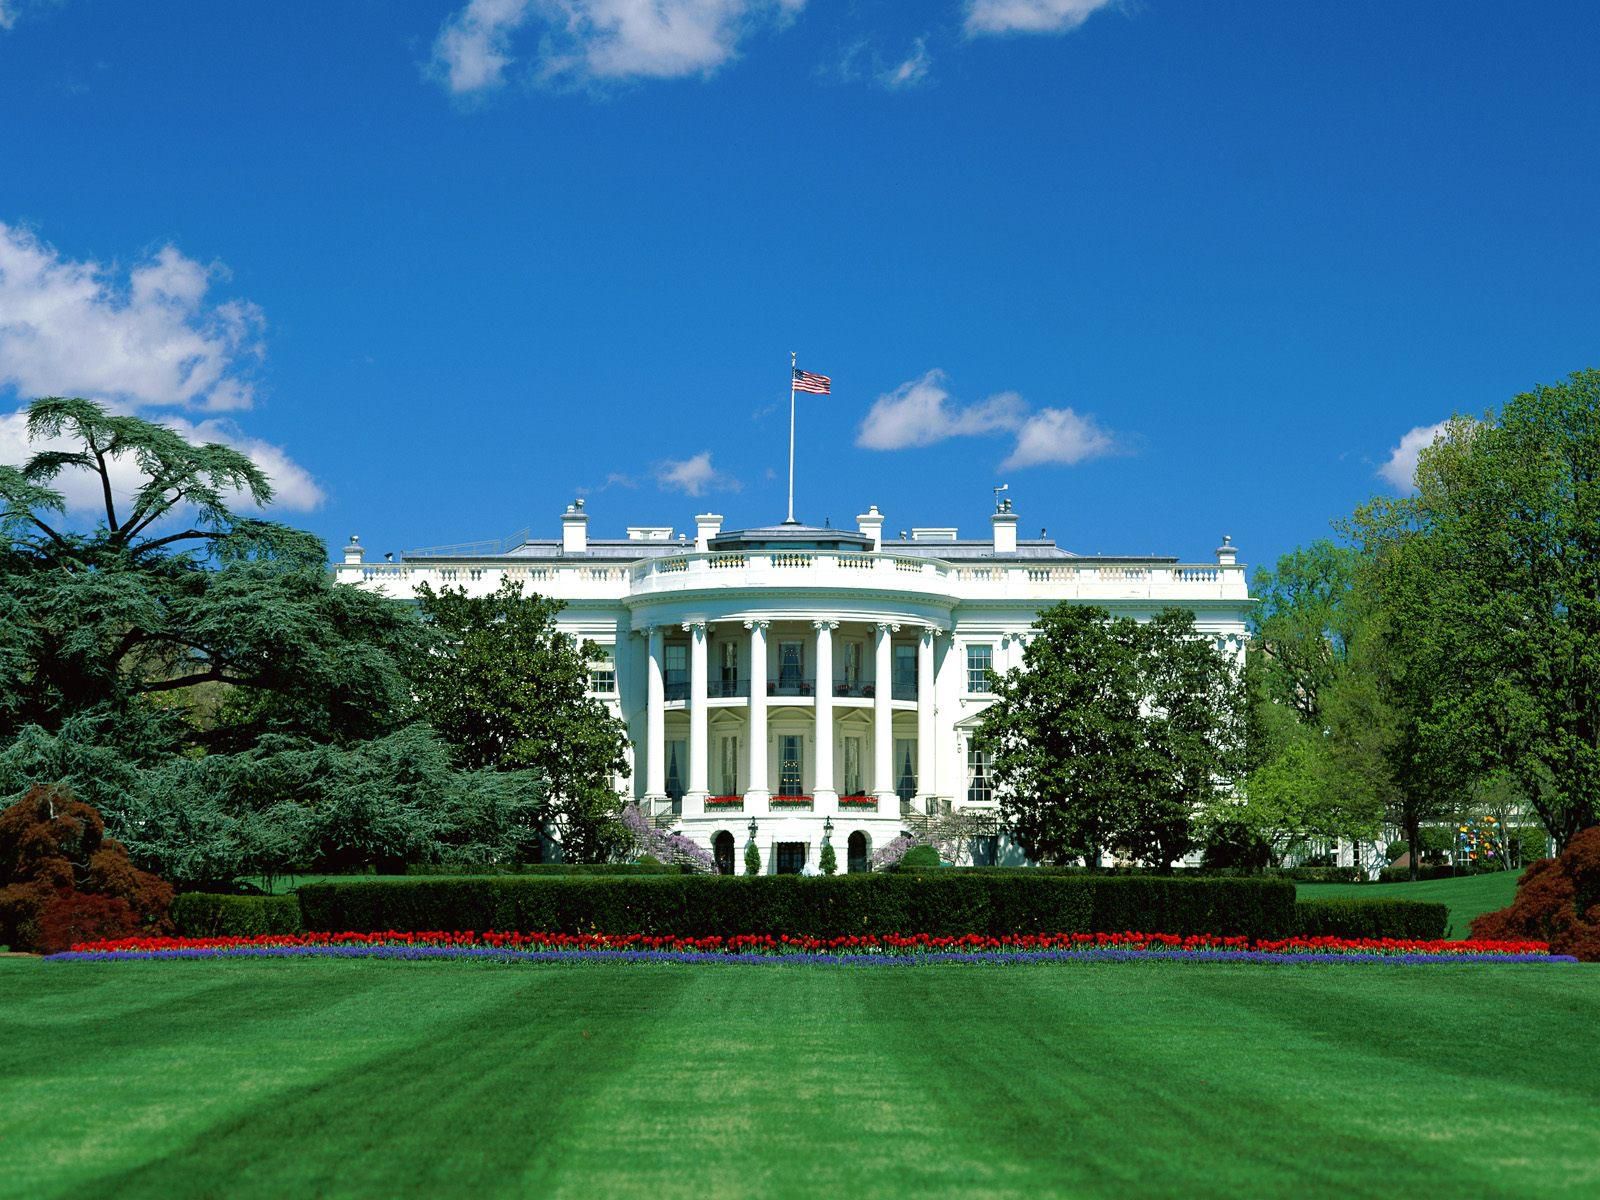 White House in Washington, DC